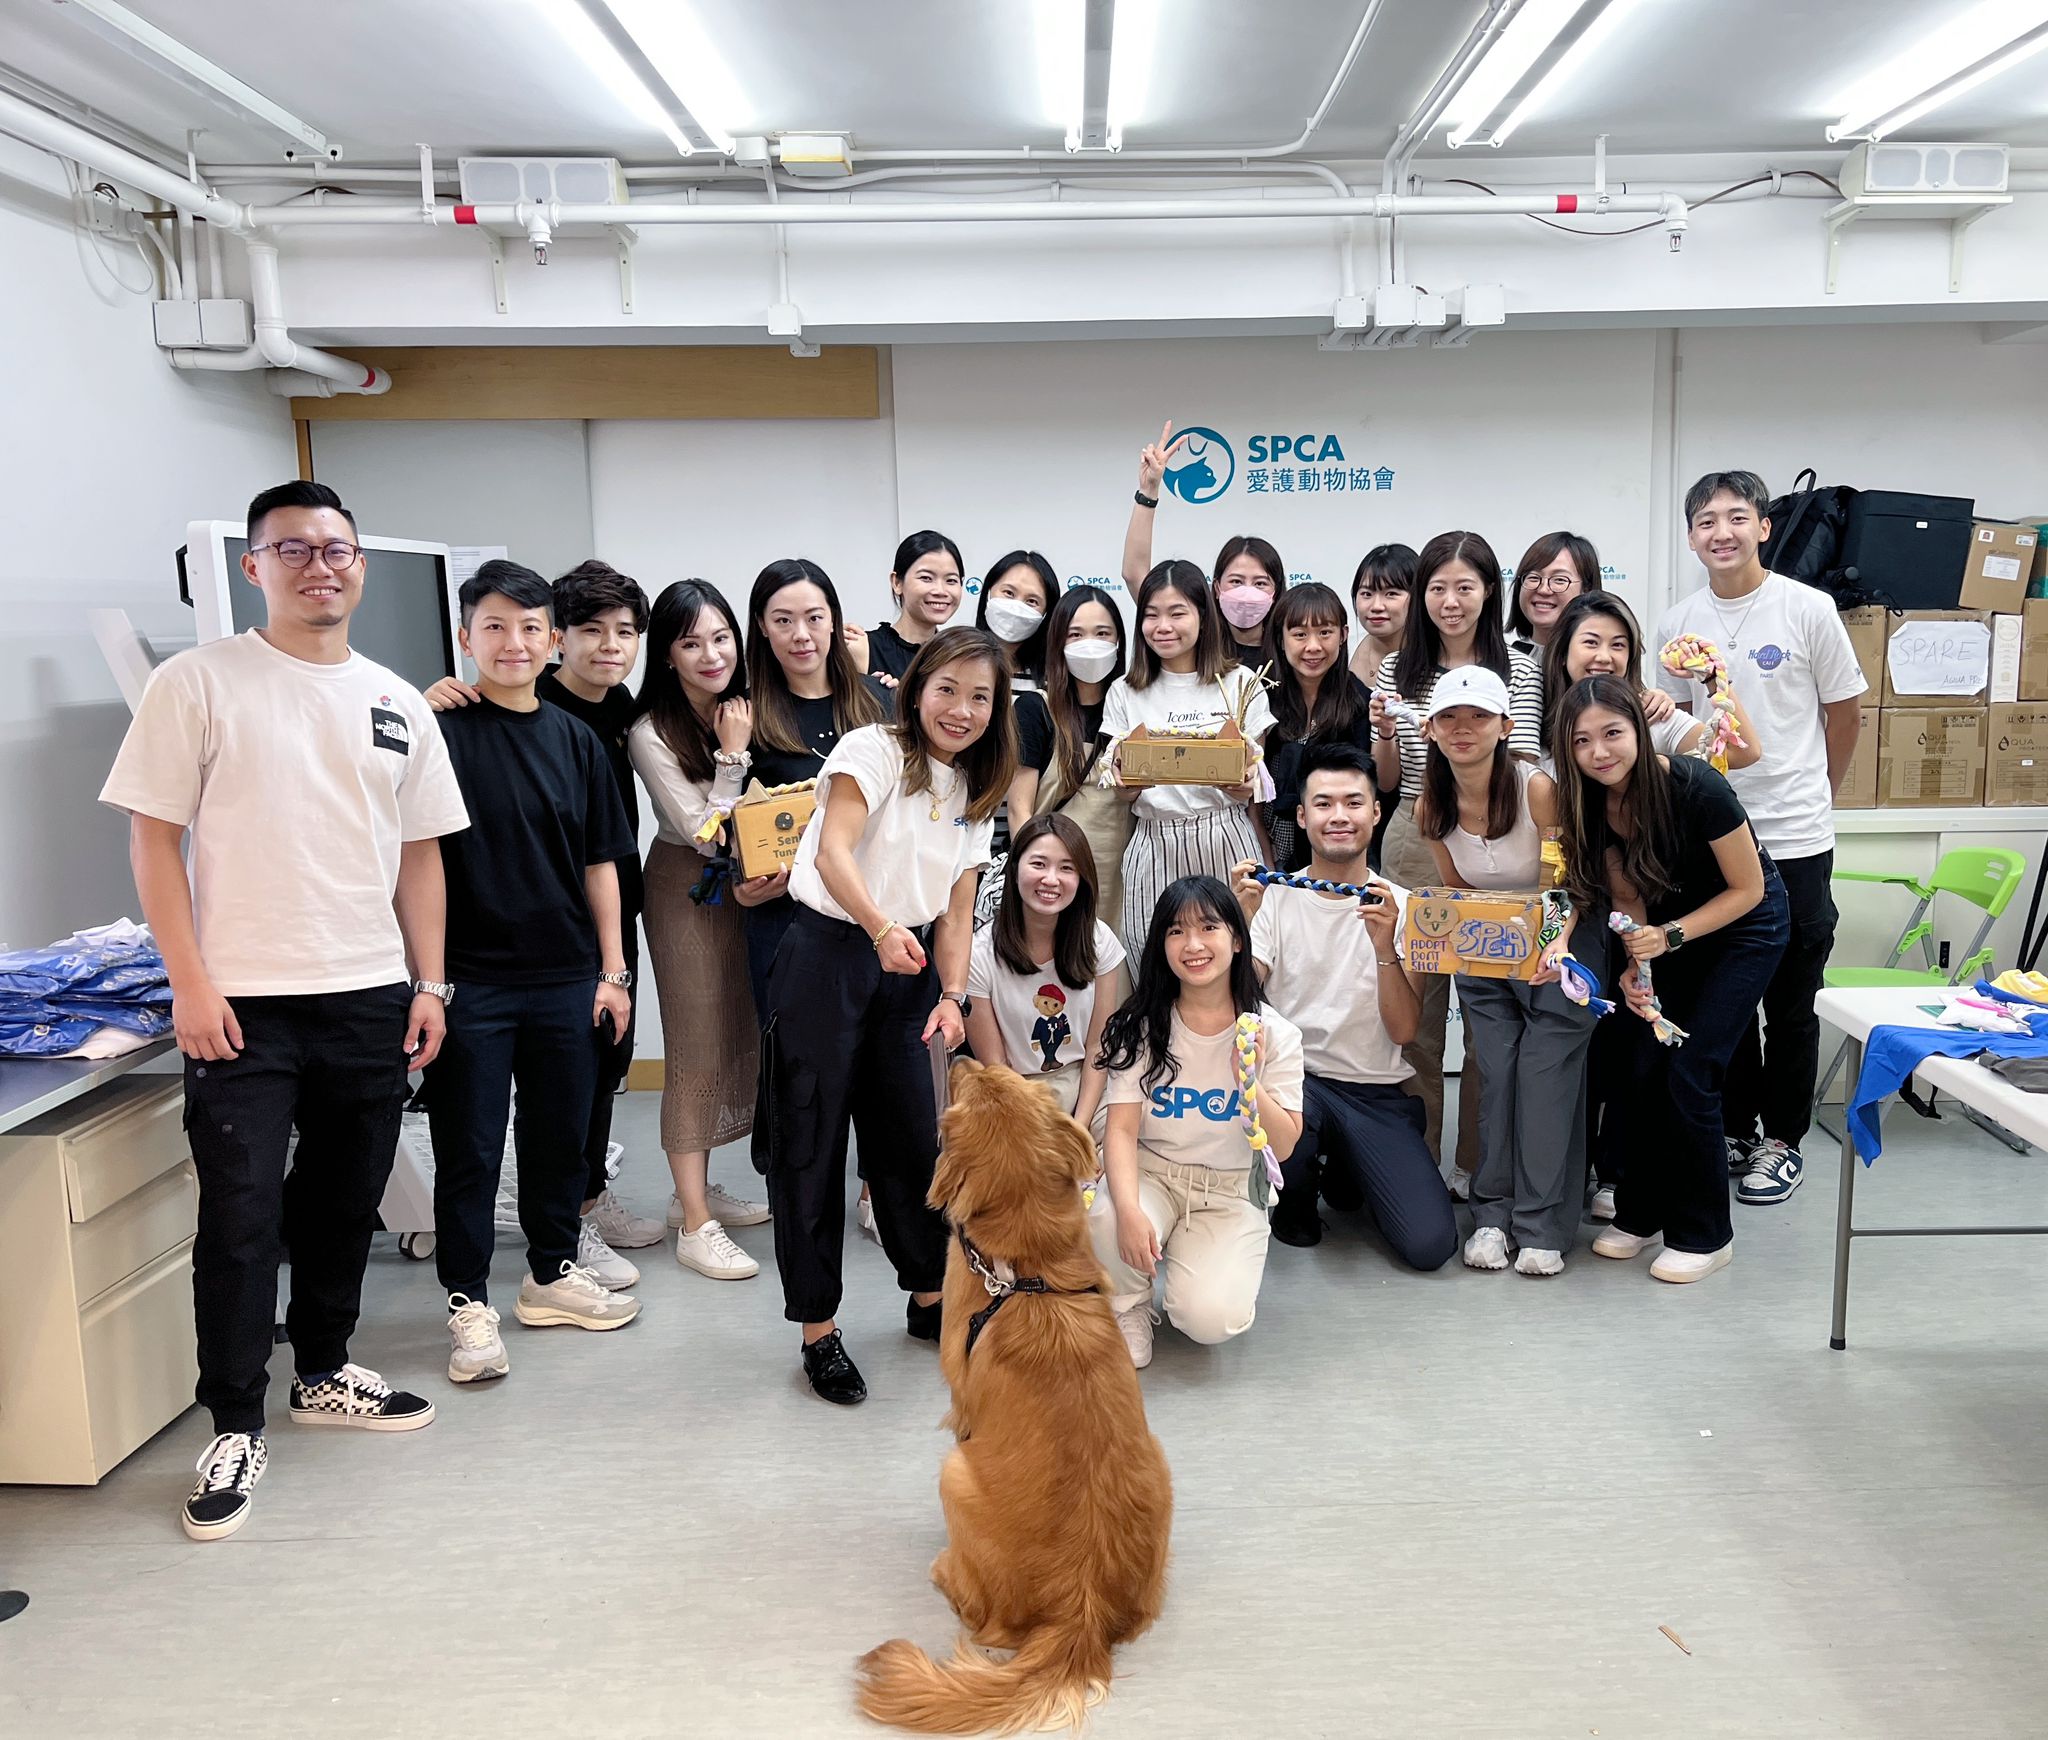 Volunteering at SPCA Hong Kong